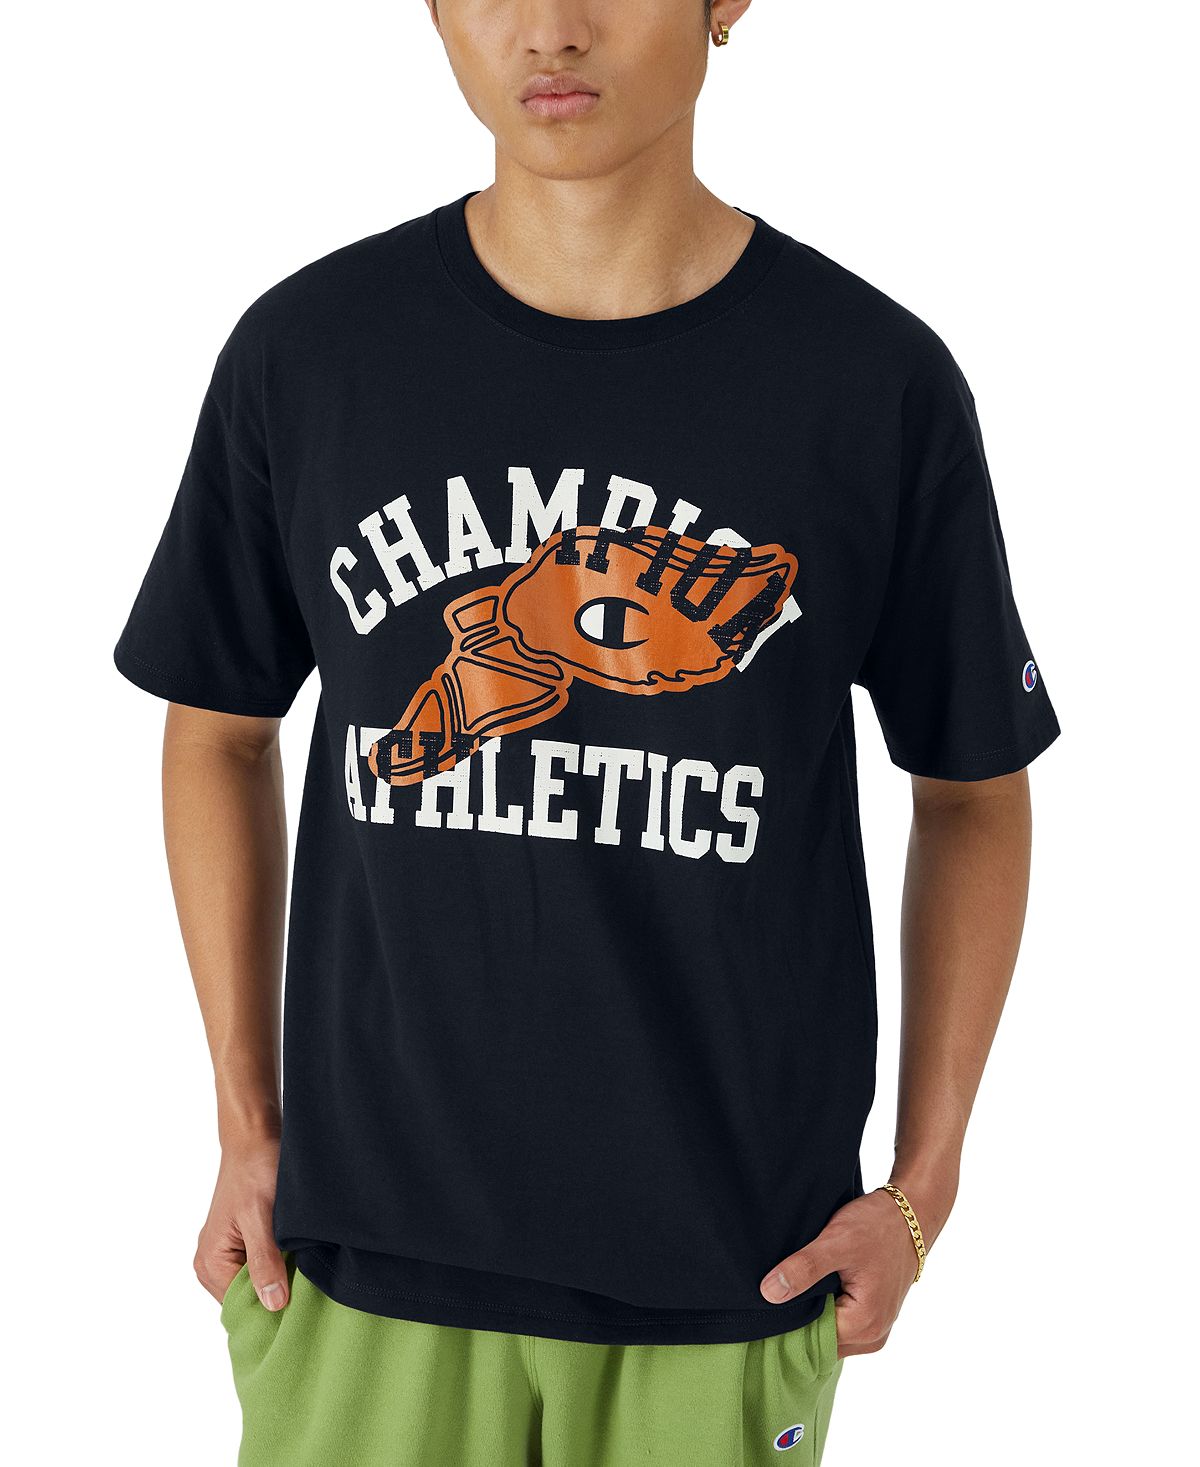 цена Мужская классическая футболка с графическим логотипом Champion